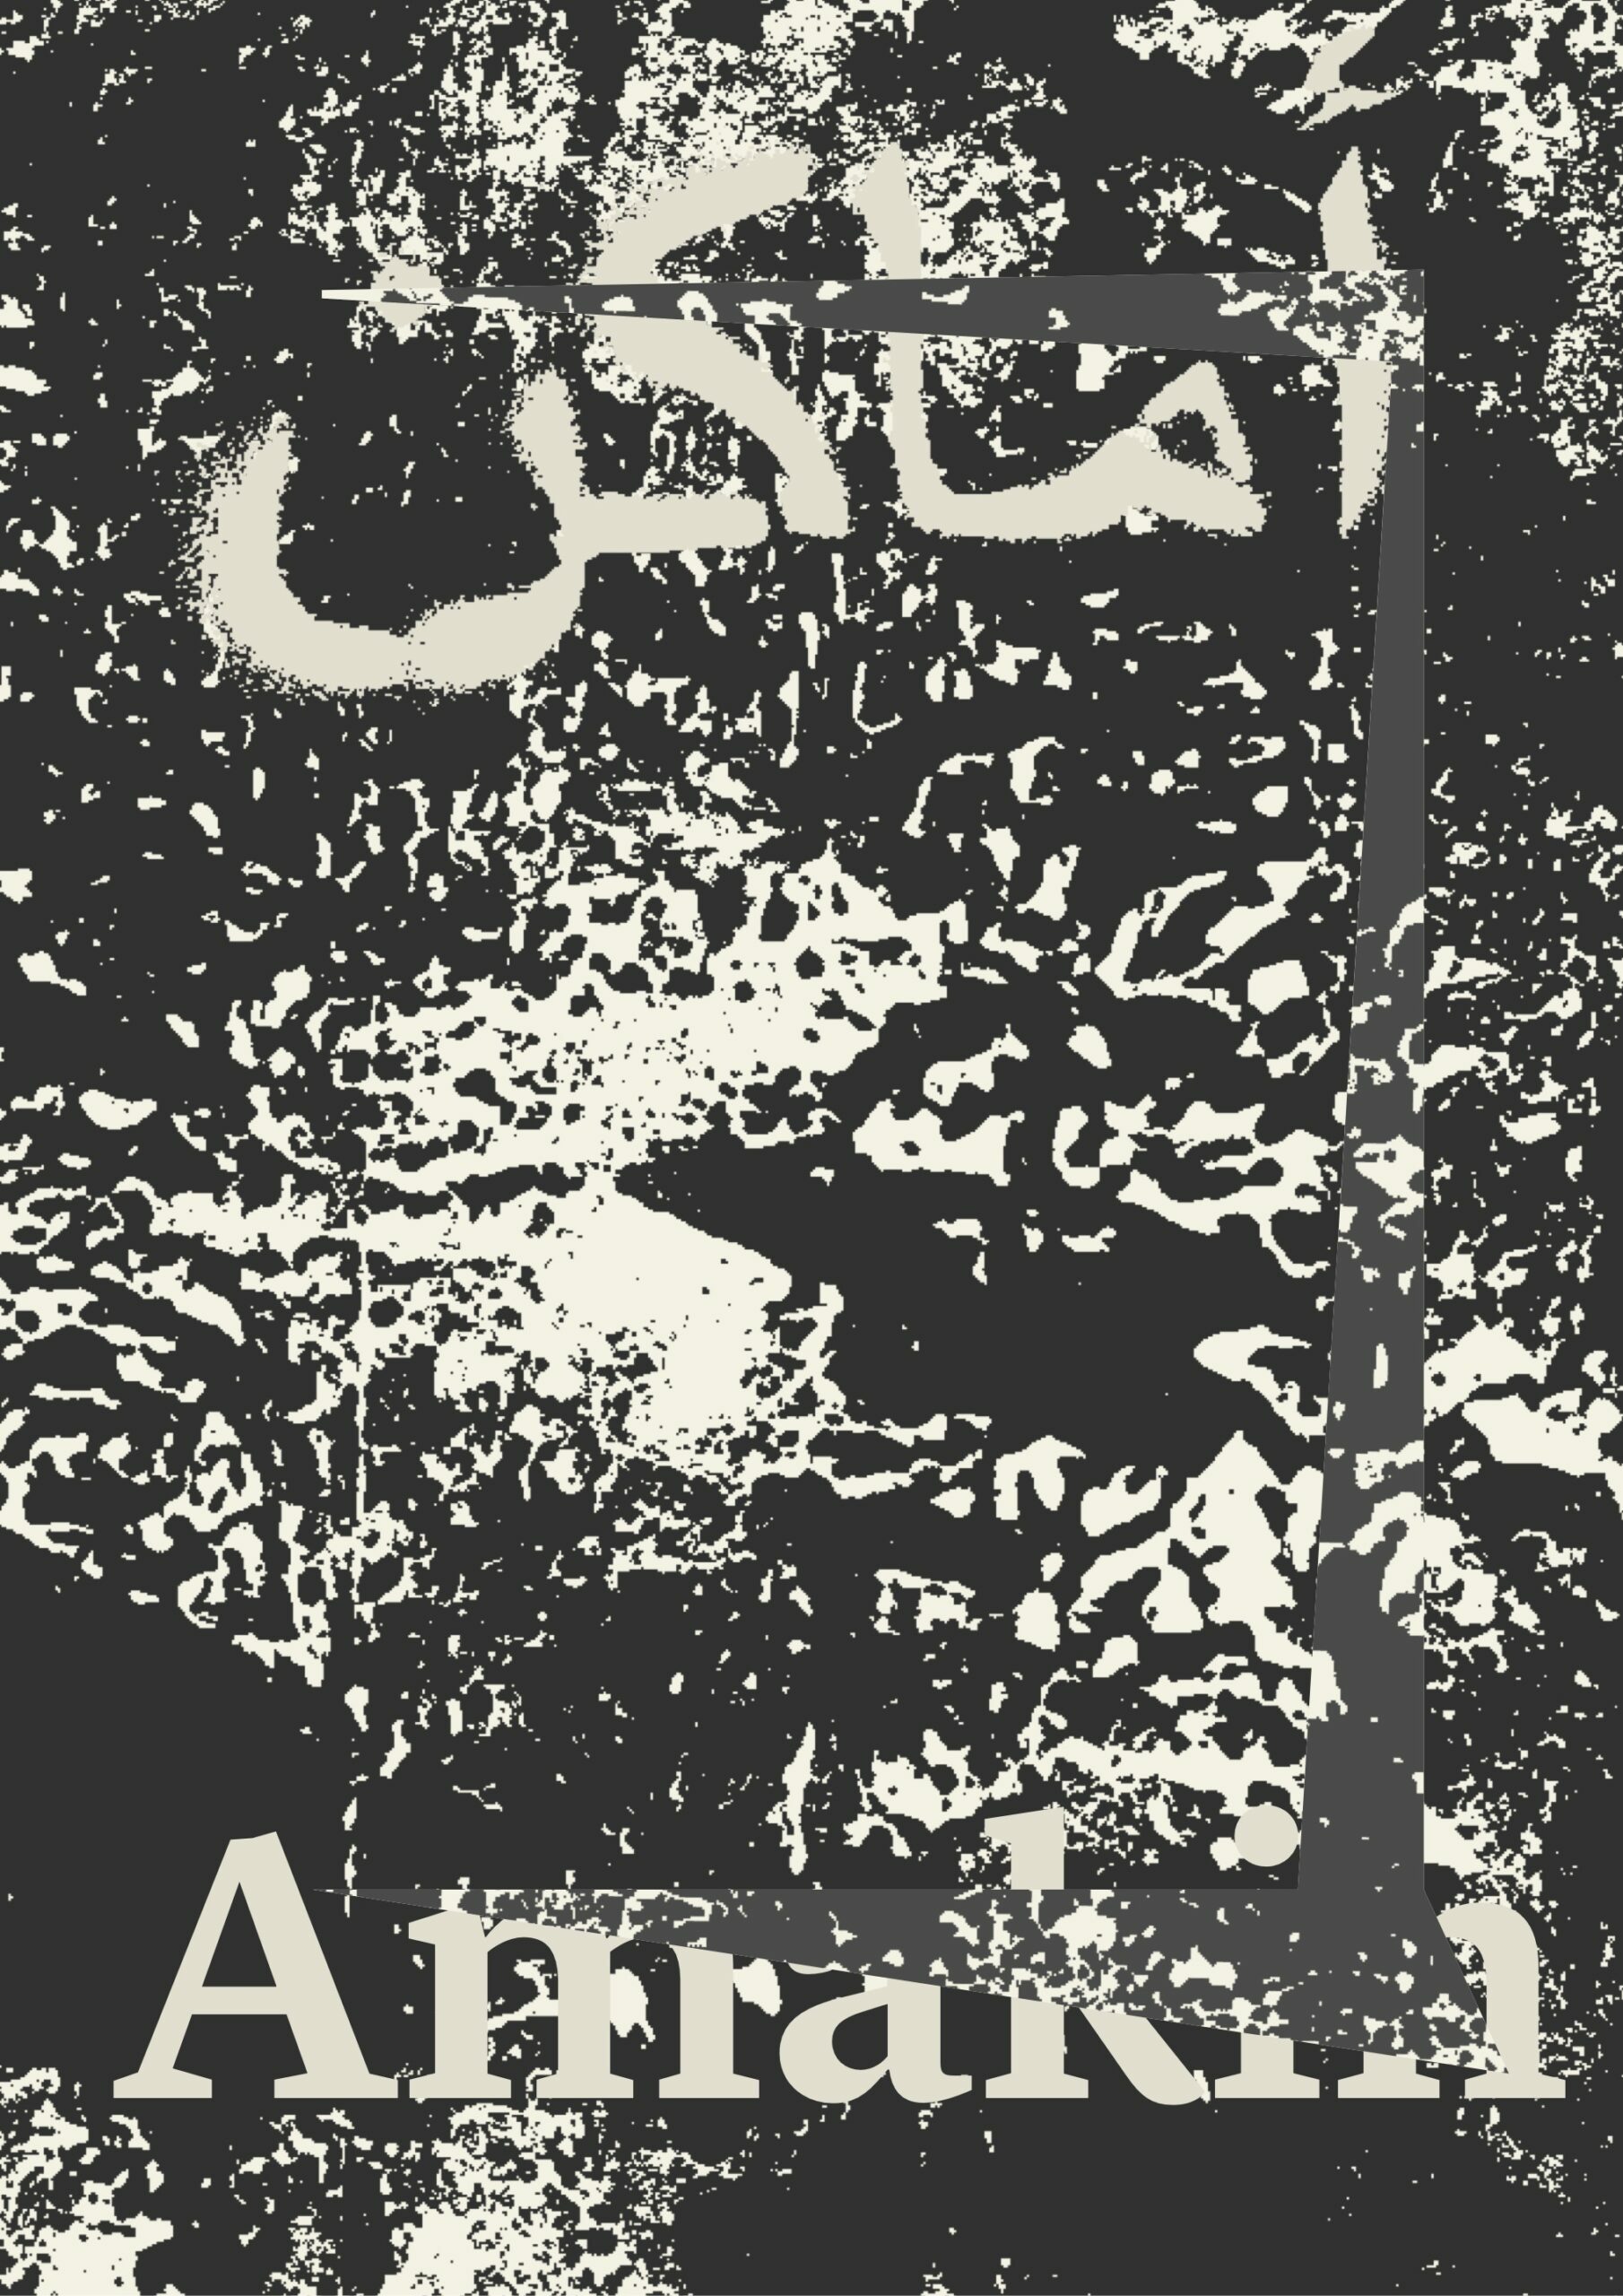 Scénographie, production et montage – 21,39 Jeddah Arts – Amakin